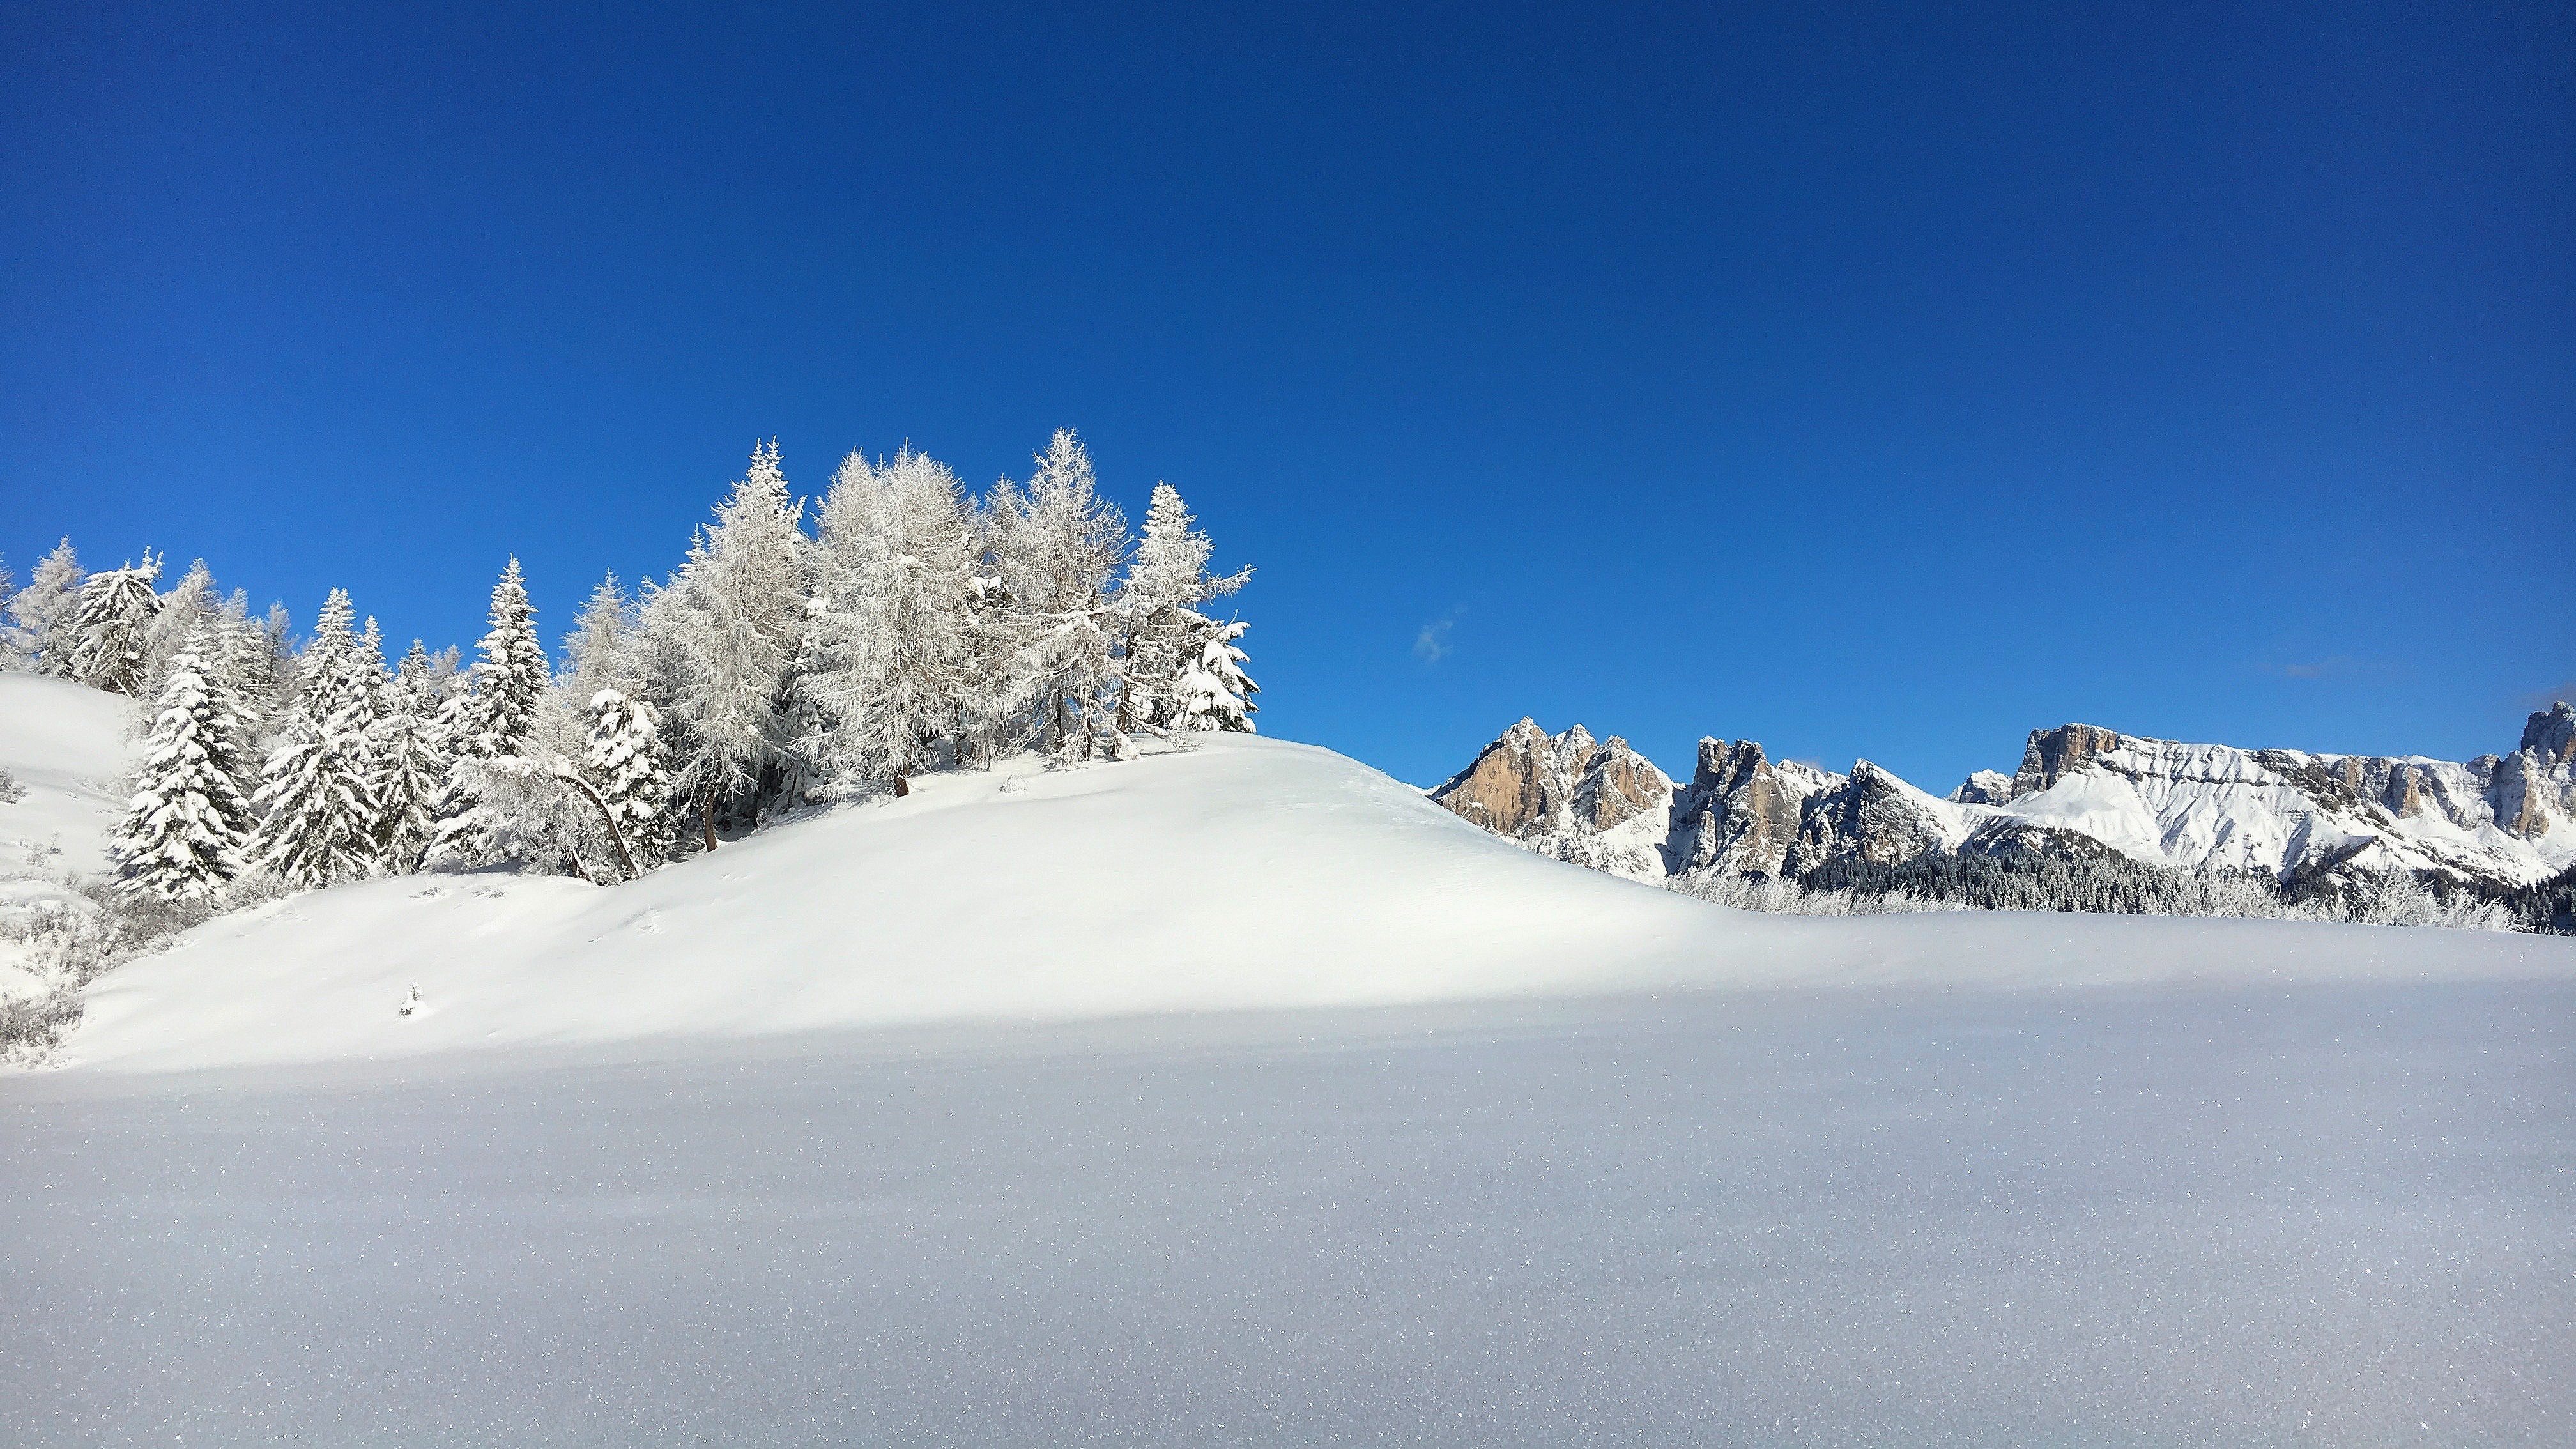 Pine trees on snow photo